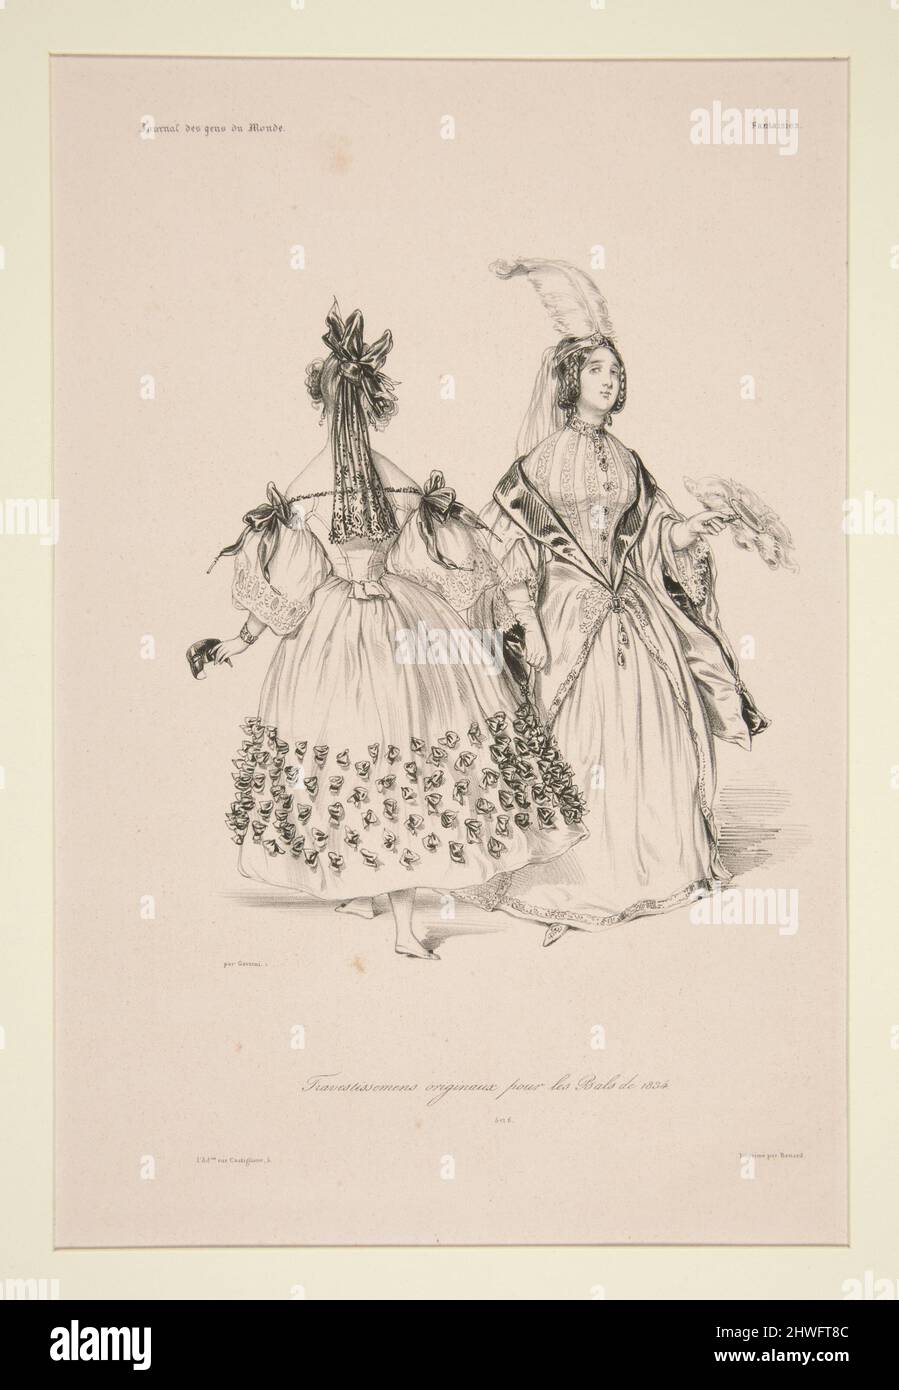 TRAVESTISSEMENS (sic) ORIGINAUX pour les bals de 1834. 5 et 6.. Artist:  Paul Gavarni, French, 1804–1866 Stock Photo - Alamy